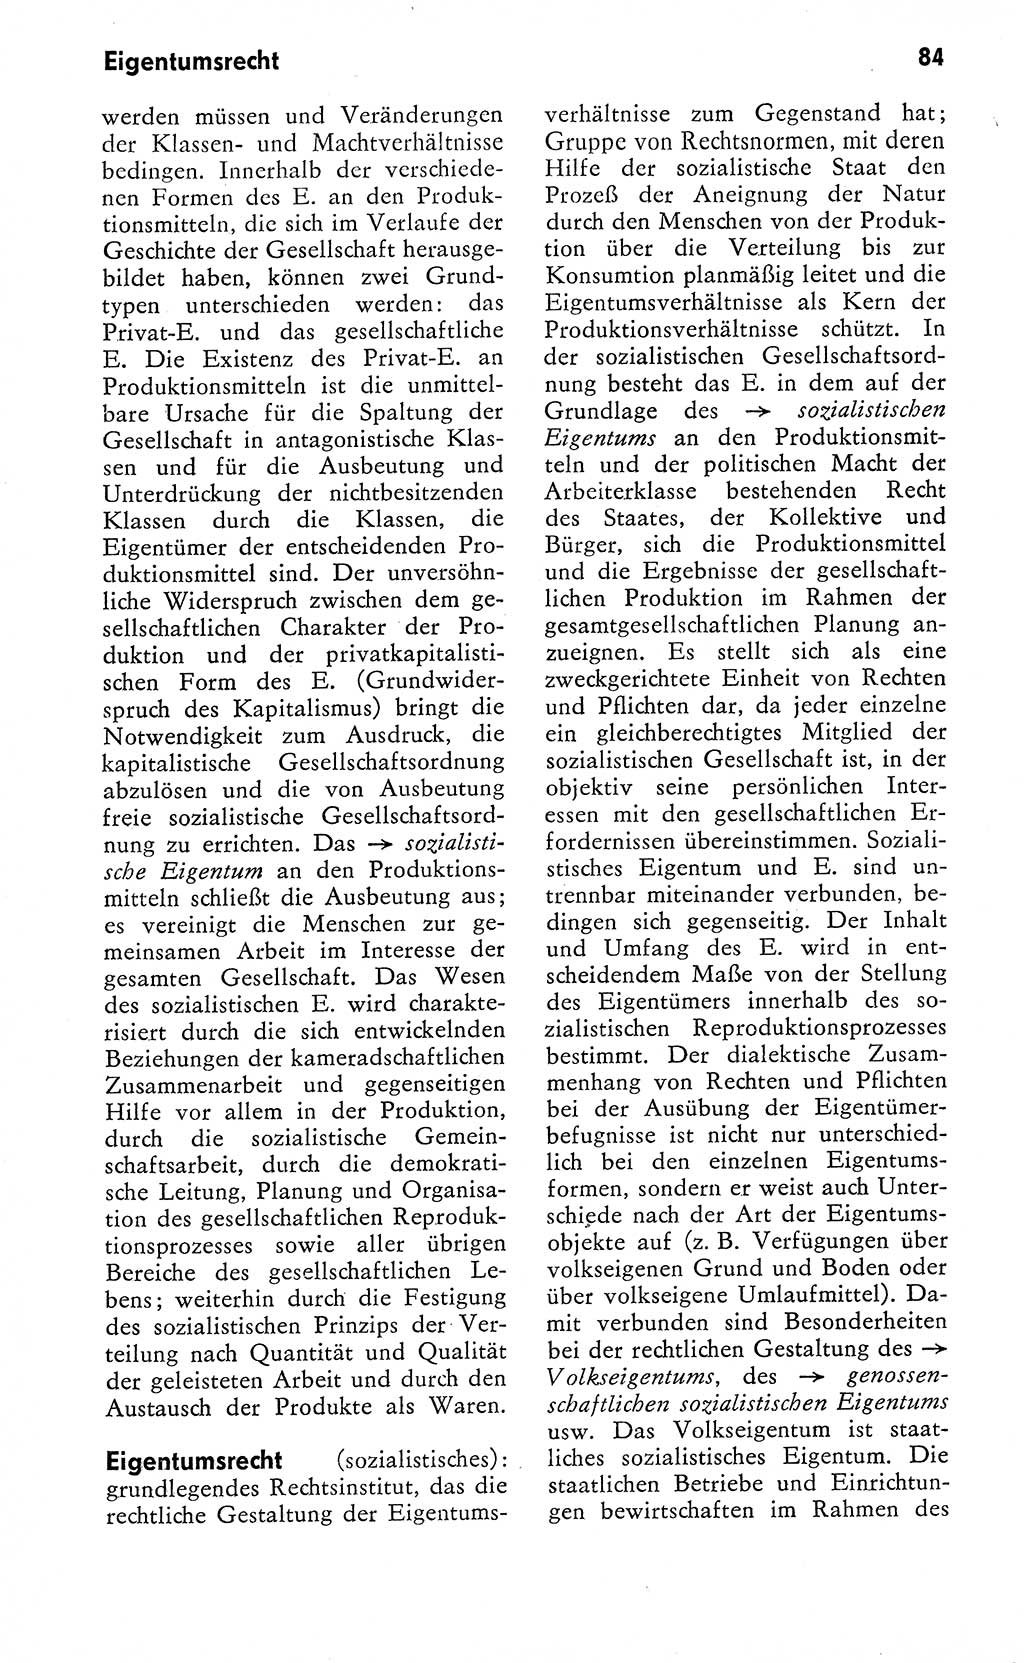 Wörterbuch zum sozialistischen Staat [Deutsche Demokratische Republik (DDR)] 1974, Seite 84 (Wb. soz. St. DDR 1974, S. 84)